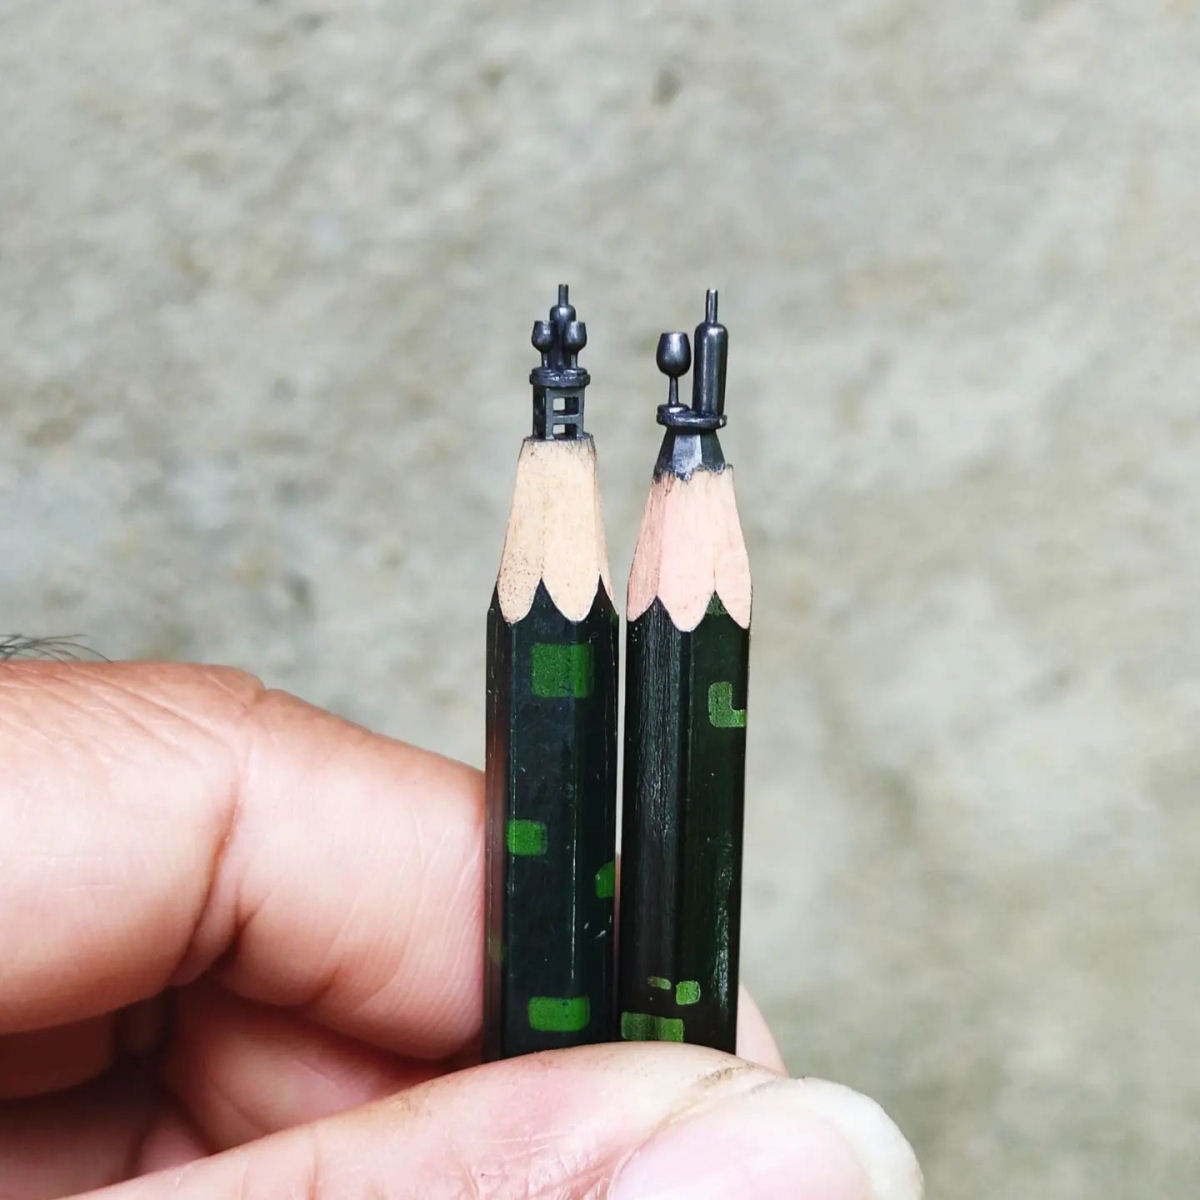 Artista transforma pontas de lpis em obras-primas em miniatura